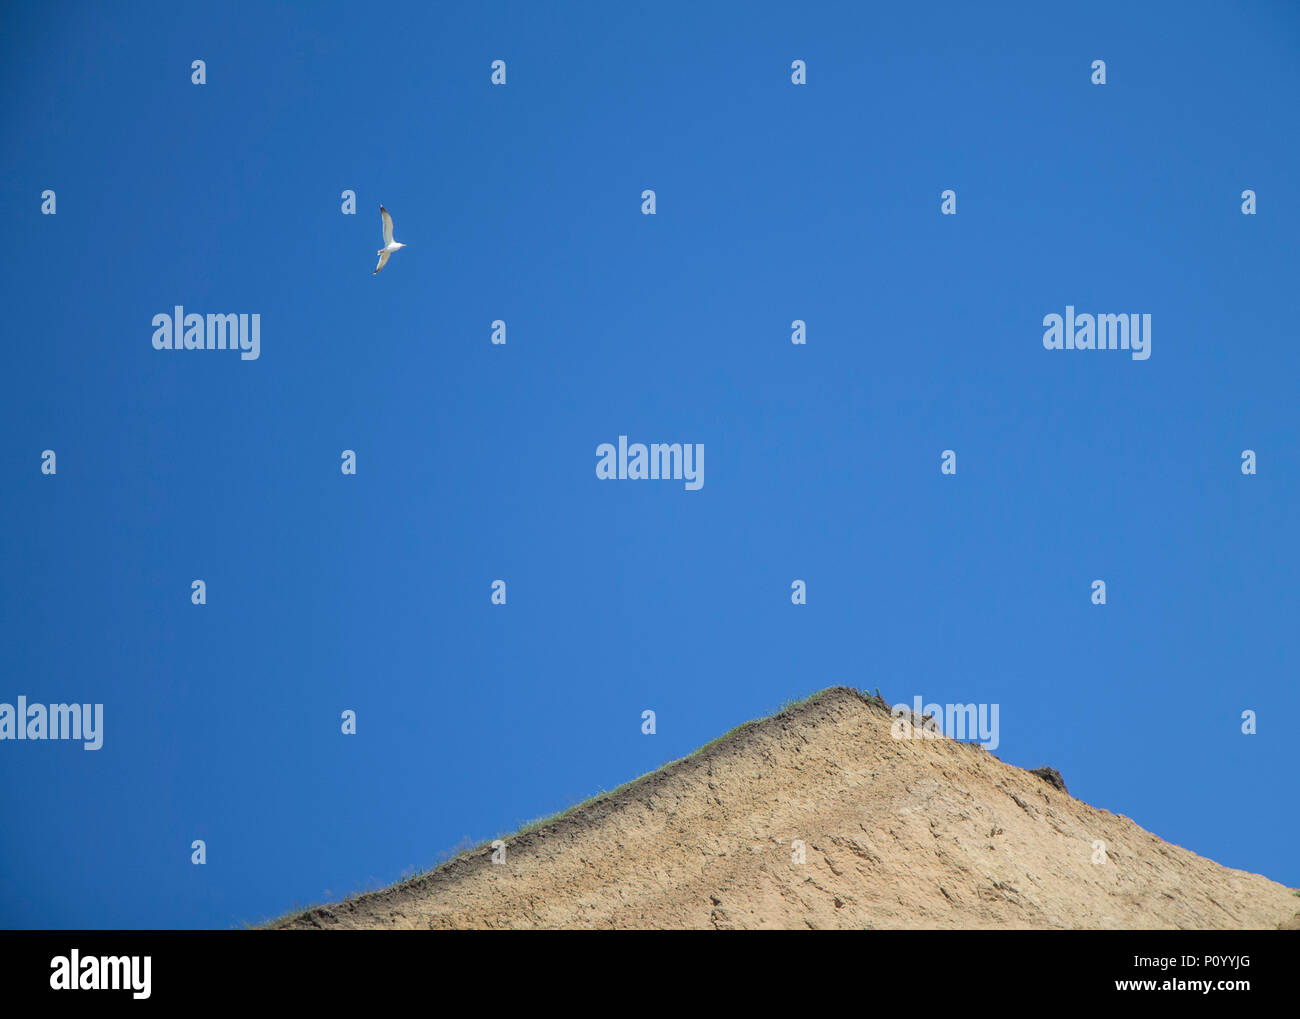 Las gaviotas volando en el azul cielo soleado en la arena suelo arcilloso de la rotura. El minimalismo y la libertad simbol Foto de stock